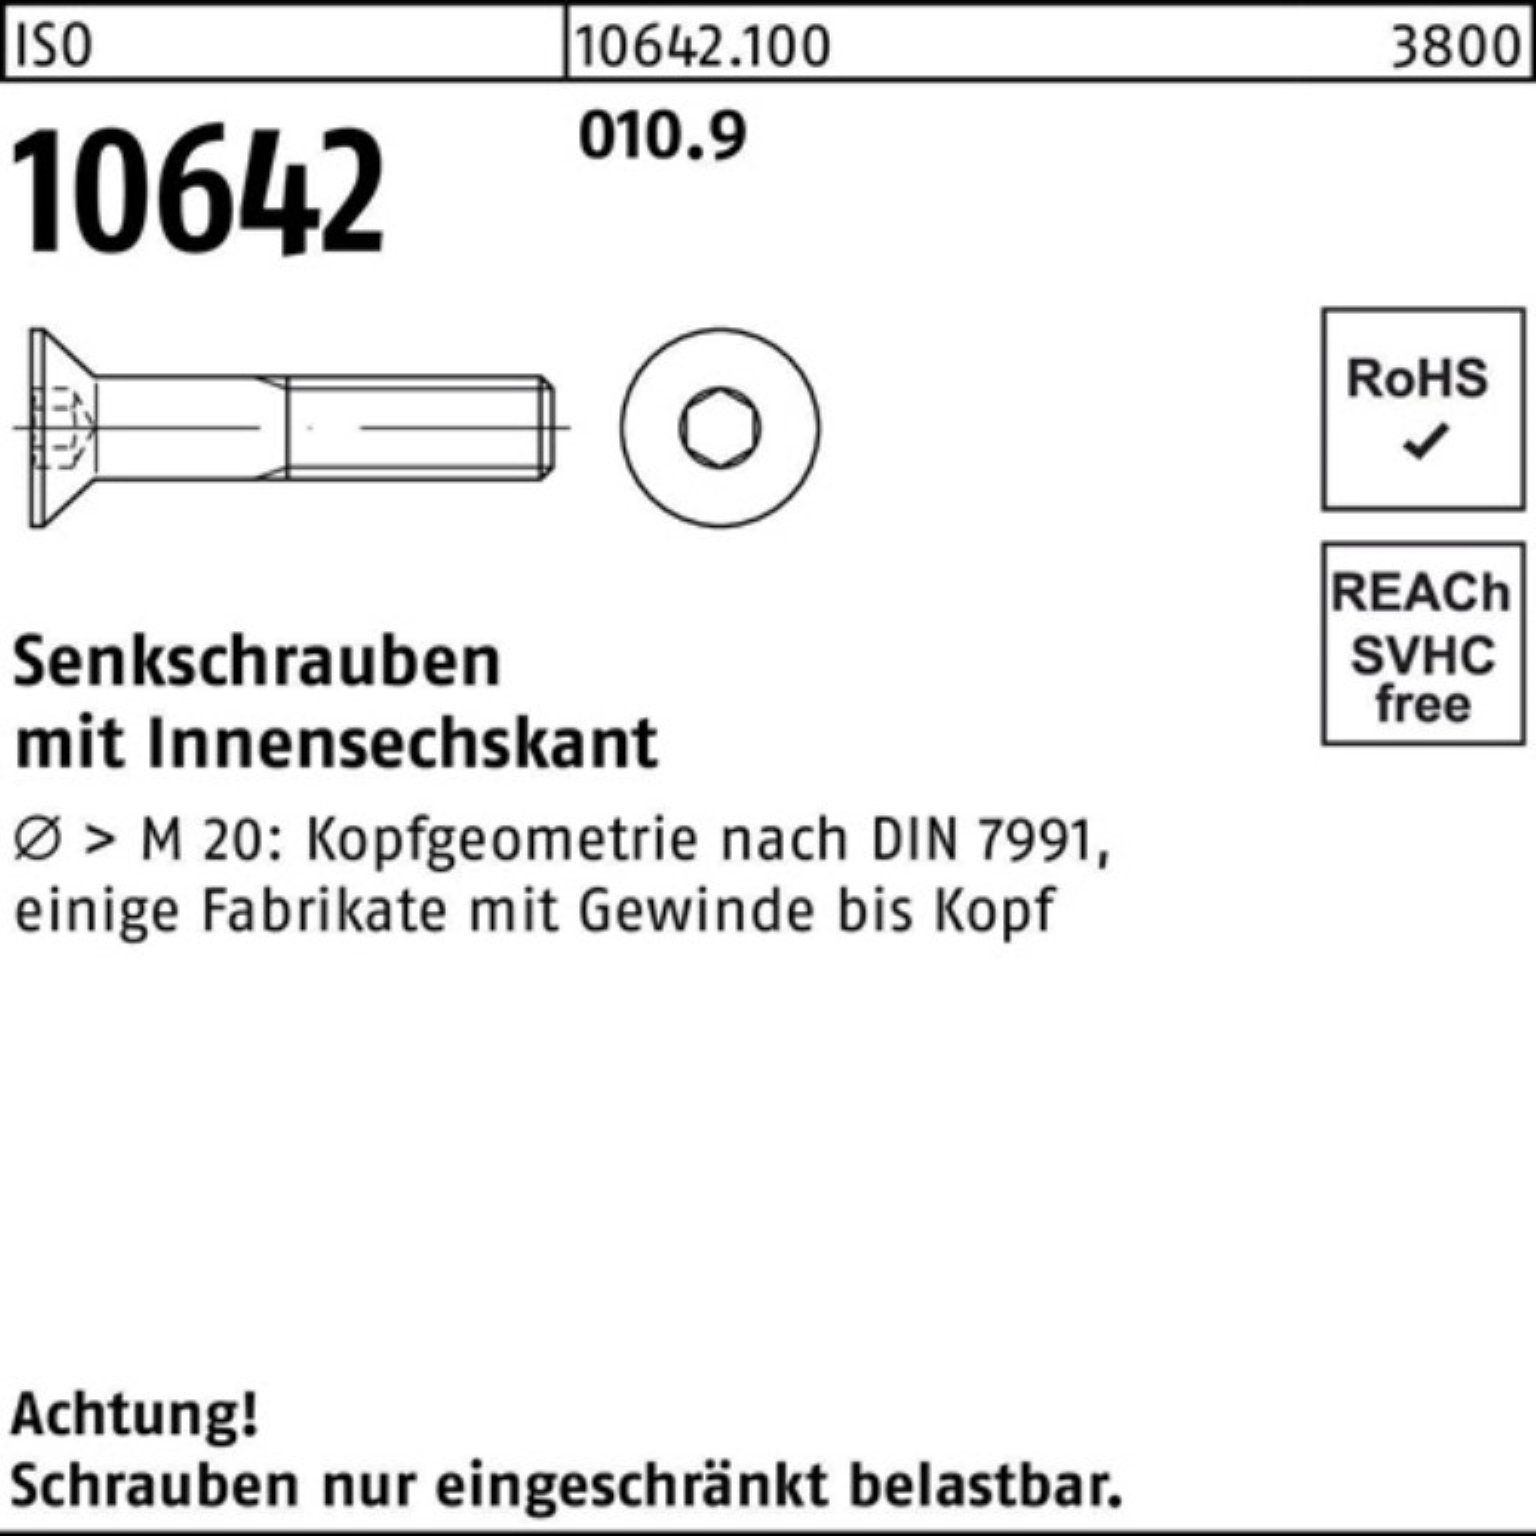 200 Pack Senkschraube 18 ISO 010.9 IS Stück Senkschraube M8x Reyher Innen-6kt 200er 10642